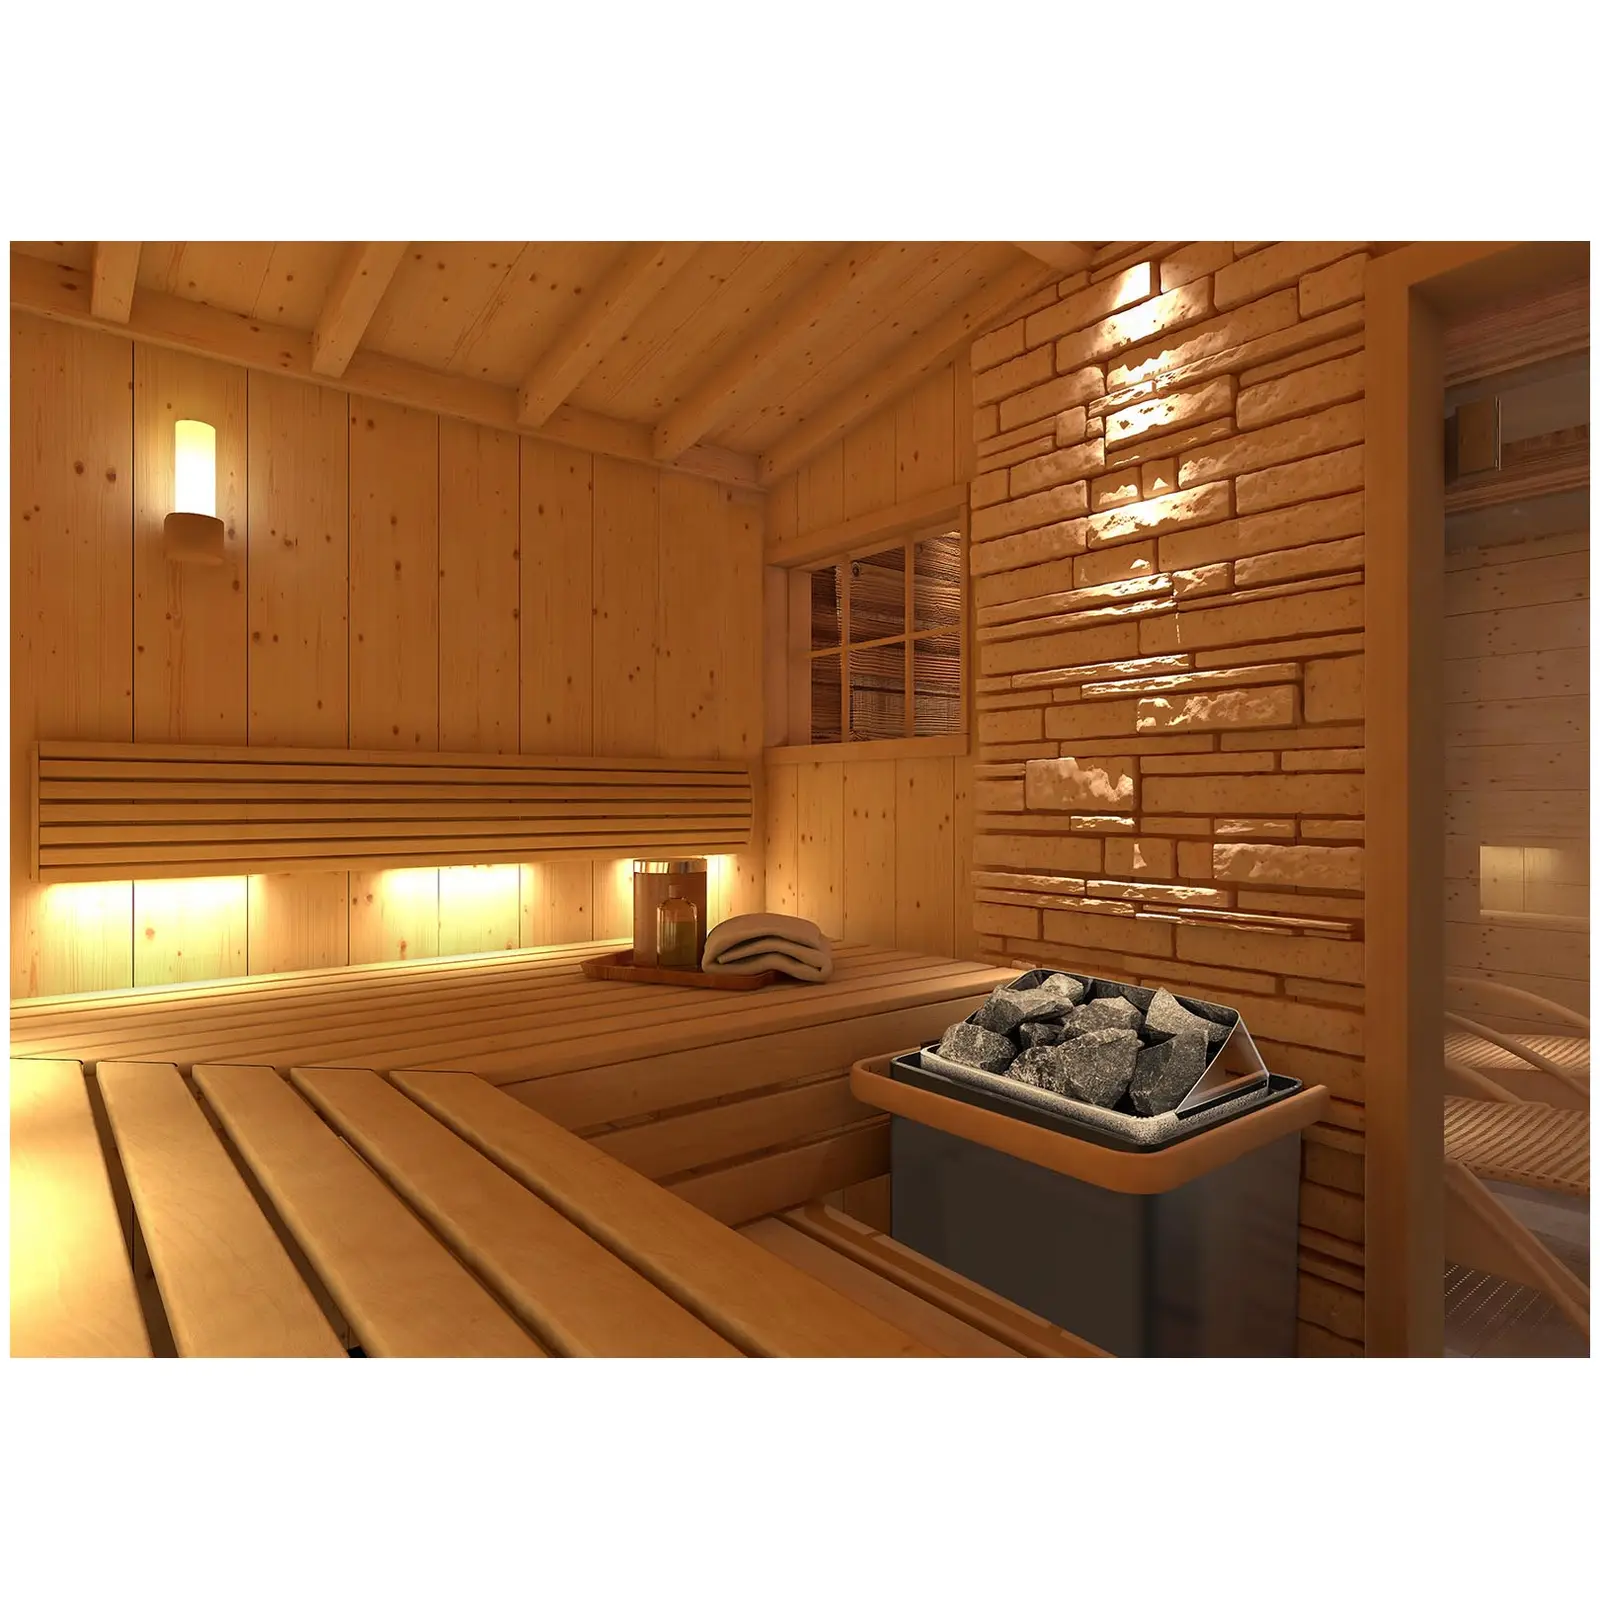 Piec do sauny - elektryczny - 4,5 kW - pokrętła